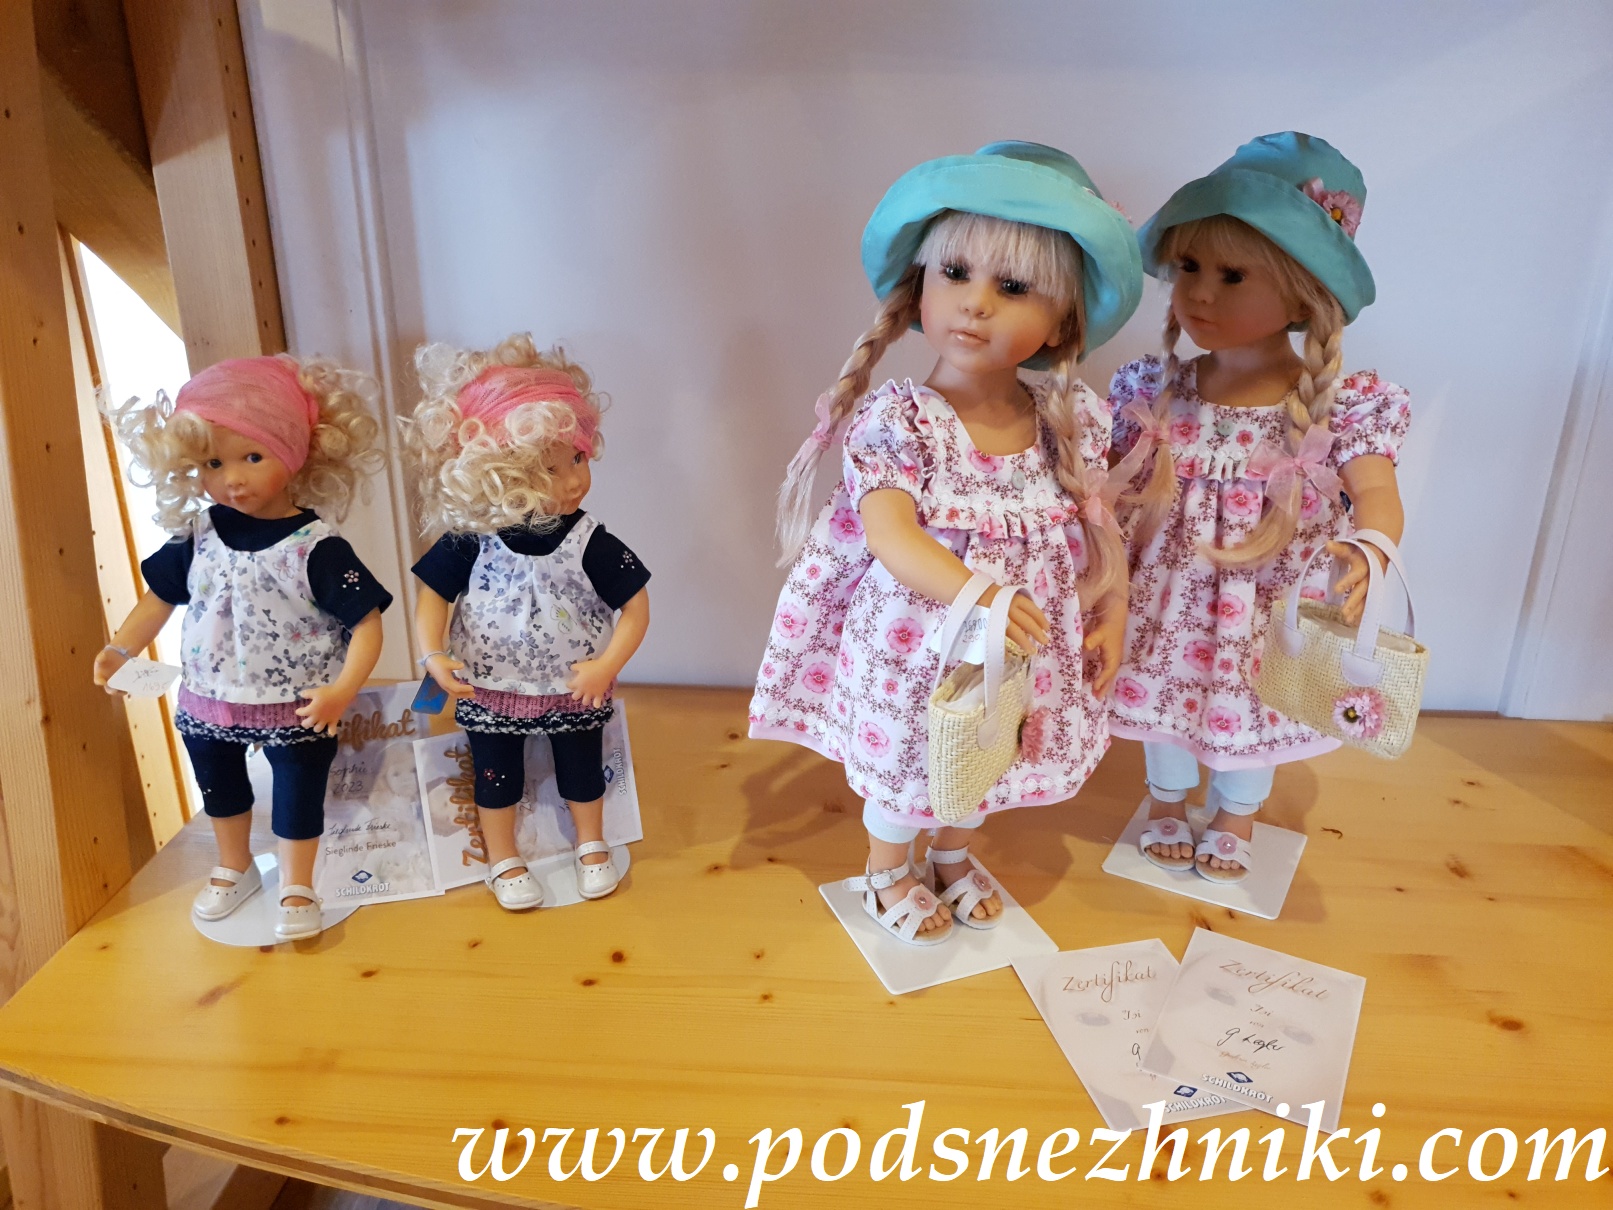 Кукольный фестиваль в Германии. Мануфактура Schildkrot